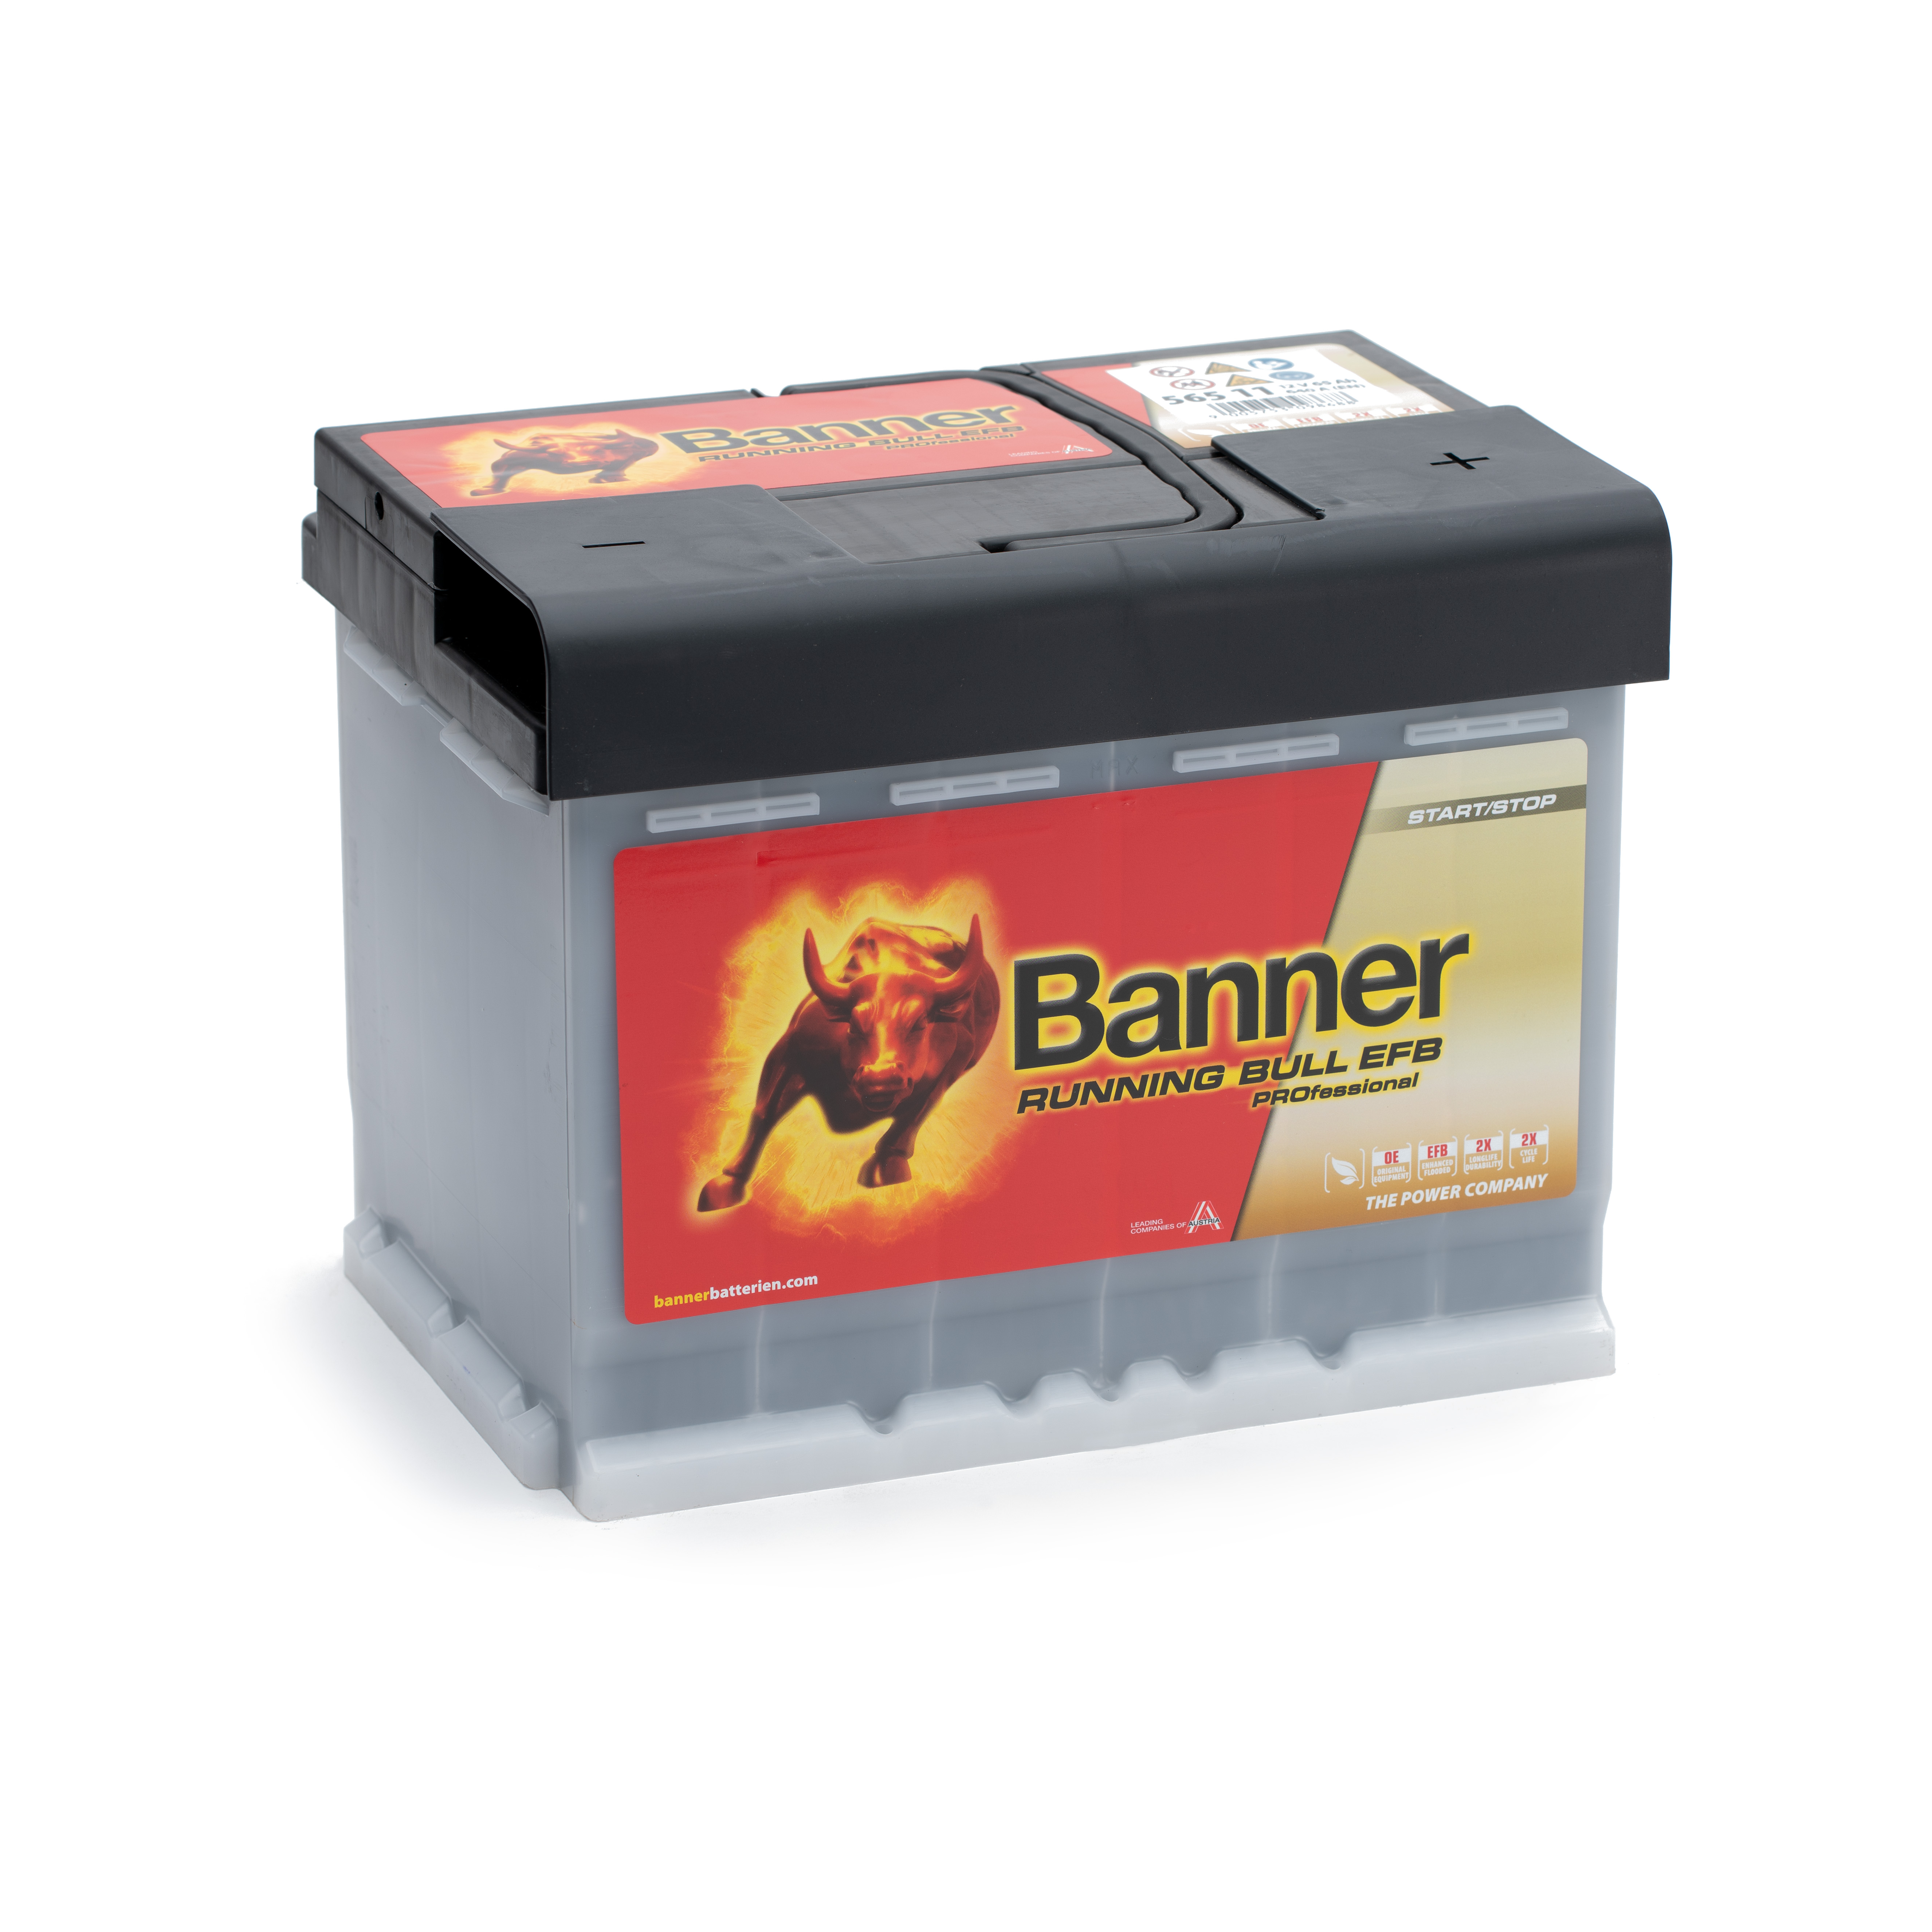 Modere EFB-Batterien von Master-Sport – geeignet für das Stopp-Start-System  - MASTER-SPORT, master sport